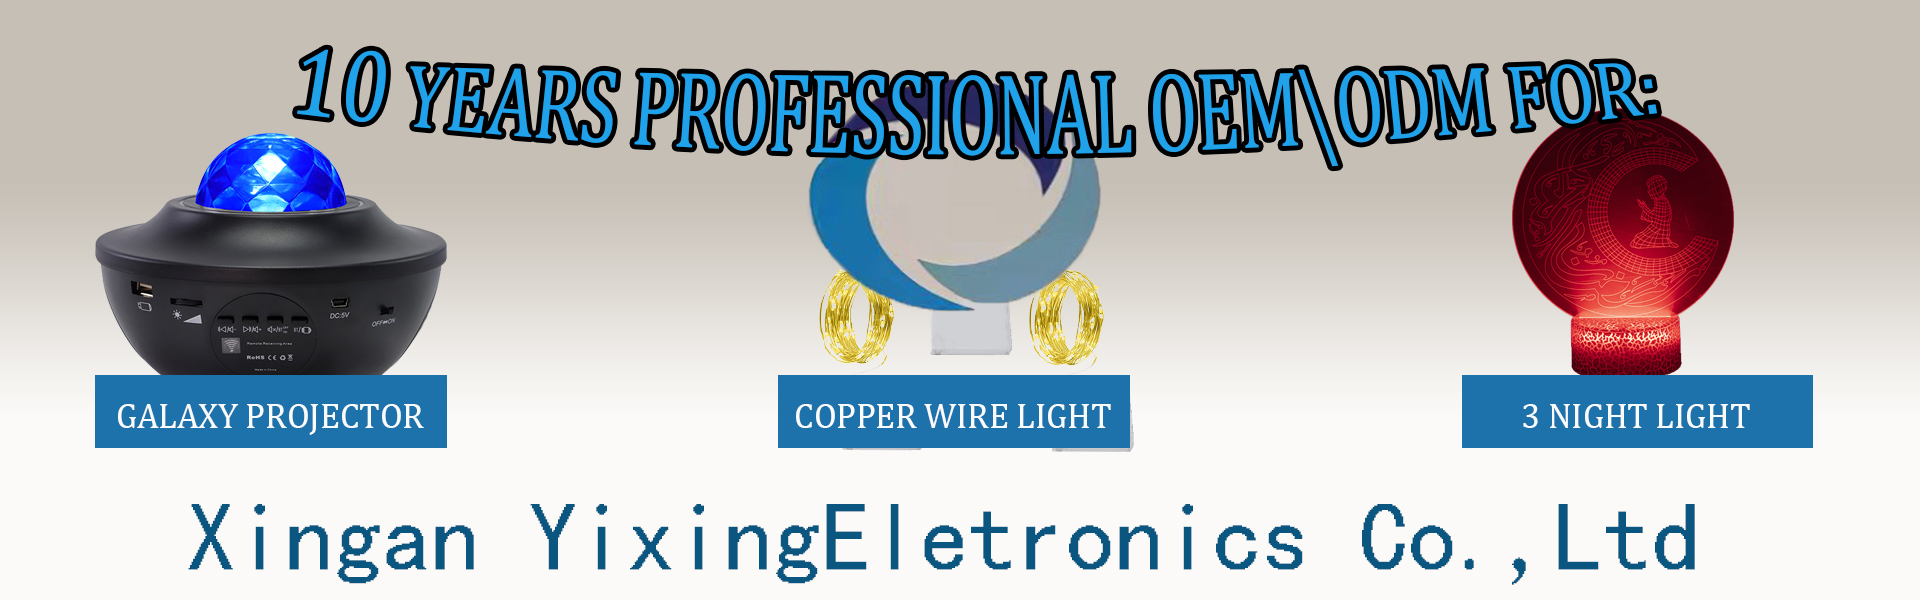 Luz de cuerda de cobre, proyector estrellado, luz denoche en 3D,Xingan Xian Yixing Electronics Co., Ltd.